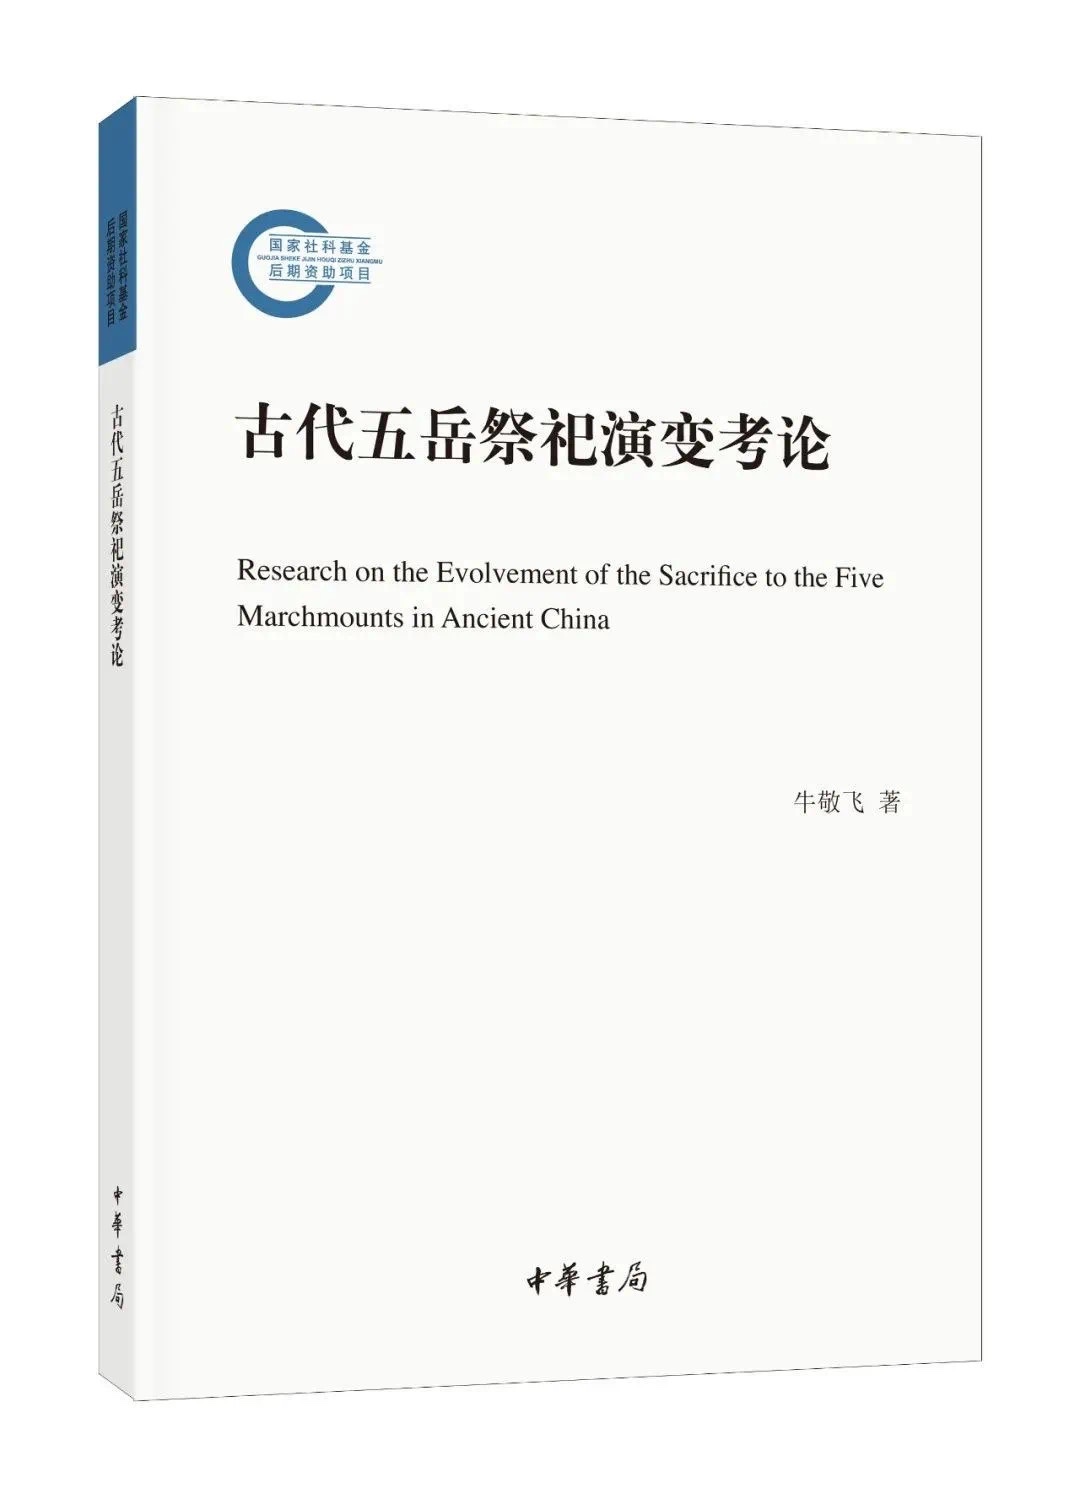 《古代五岳祭祀演变考论》-azw3,mobi,epub,pdf,txt,kindle电子书免费下载